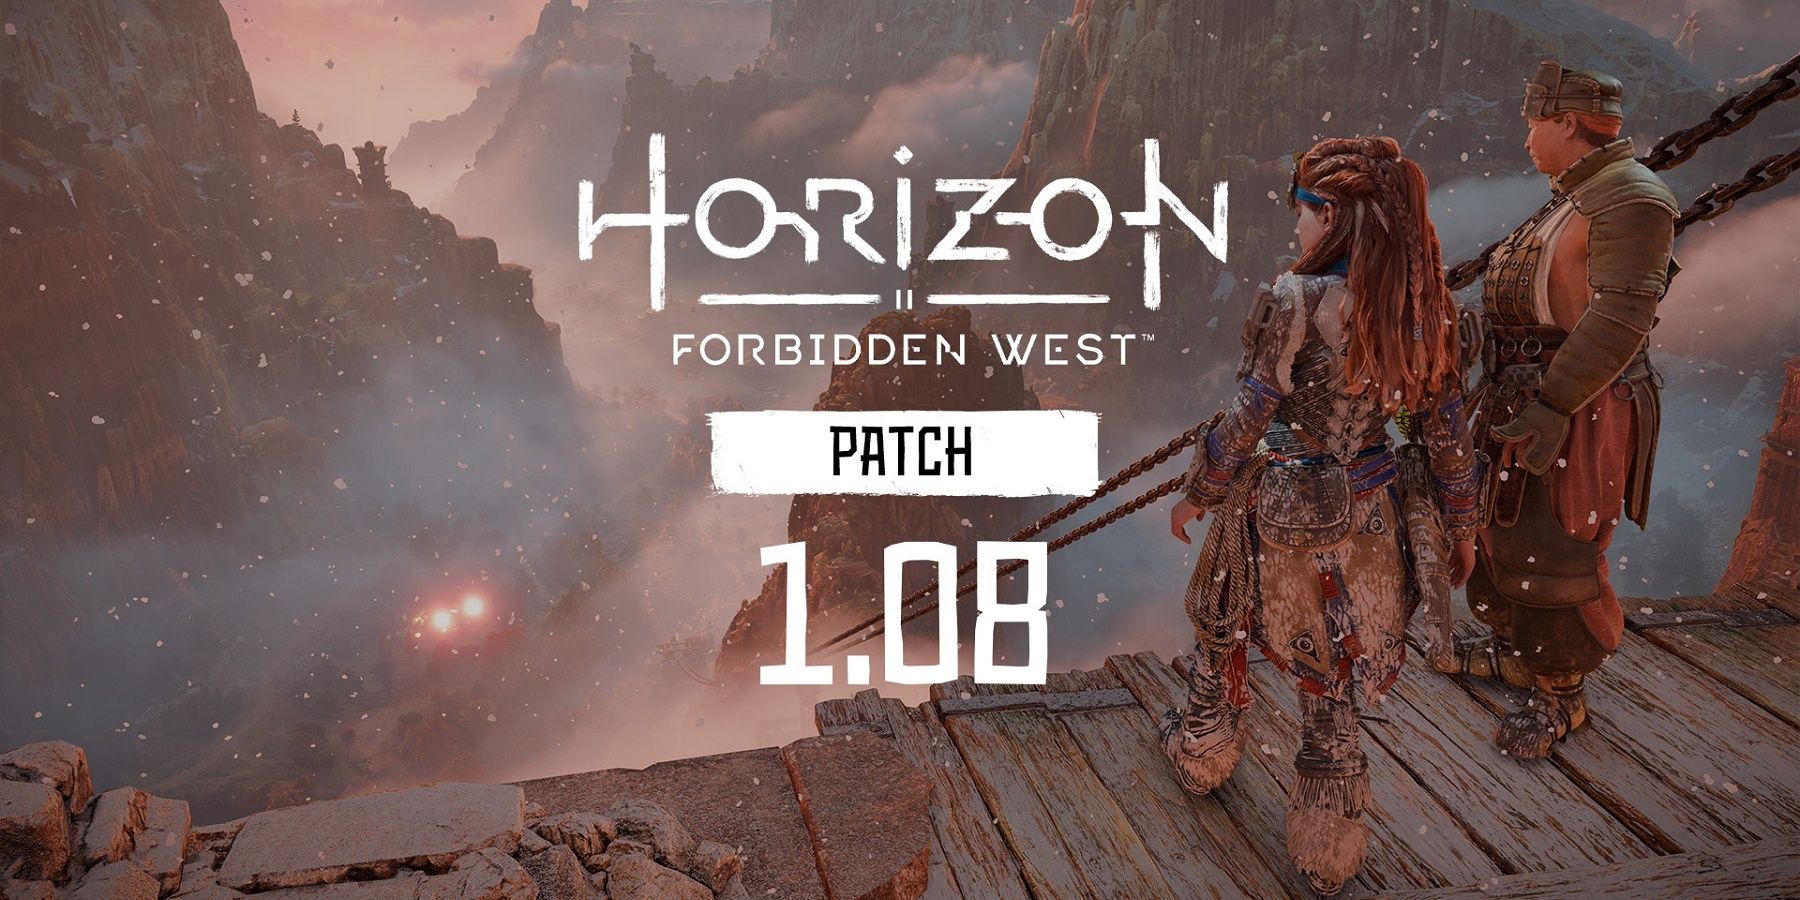 horizon forbidden west patch 1.08